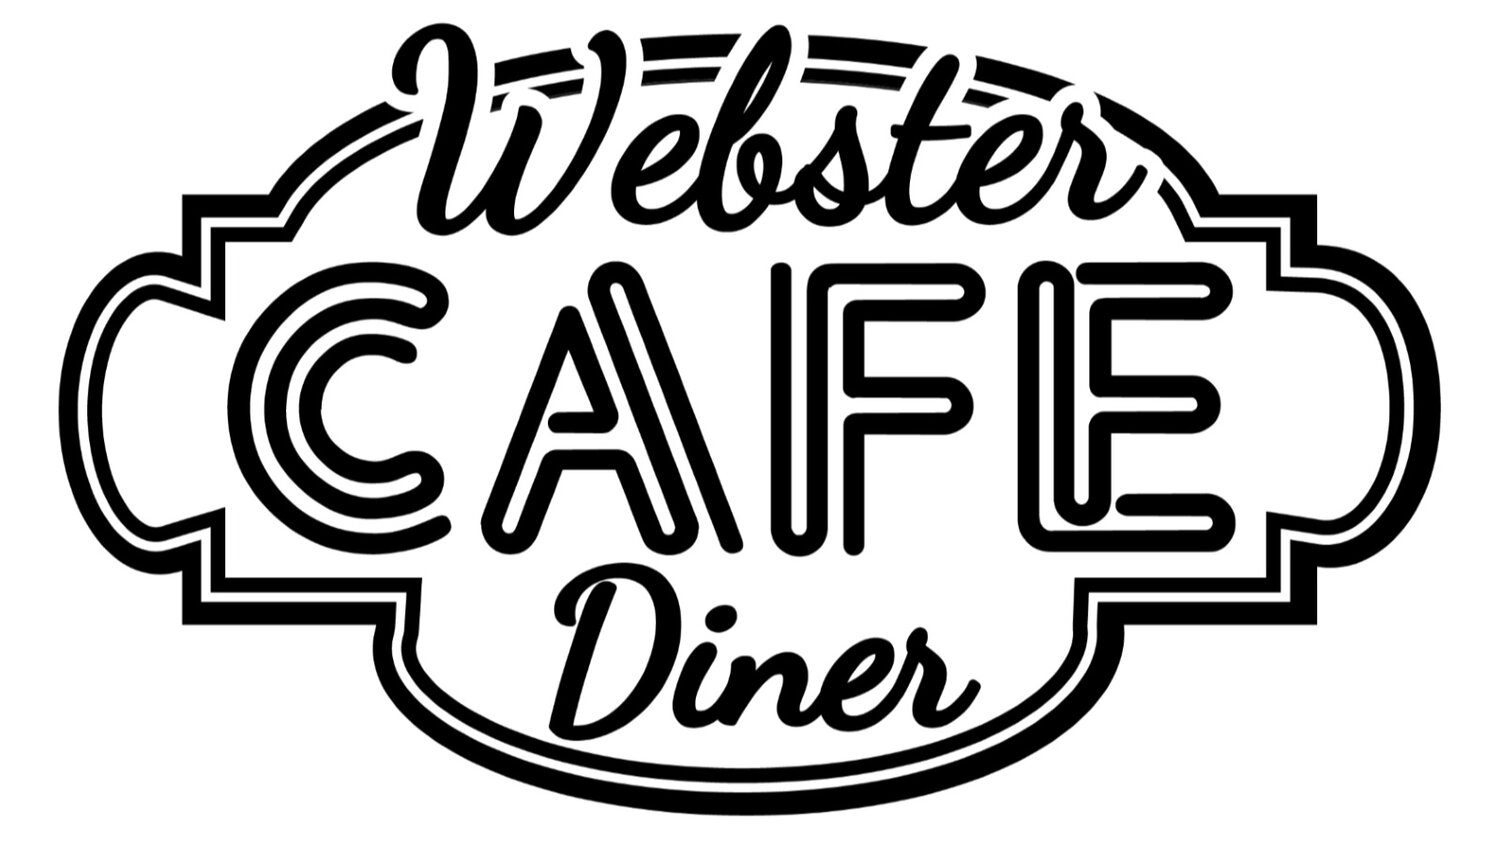 Webster Cafe Cafe & Diner